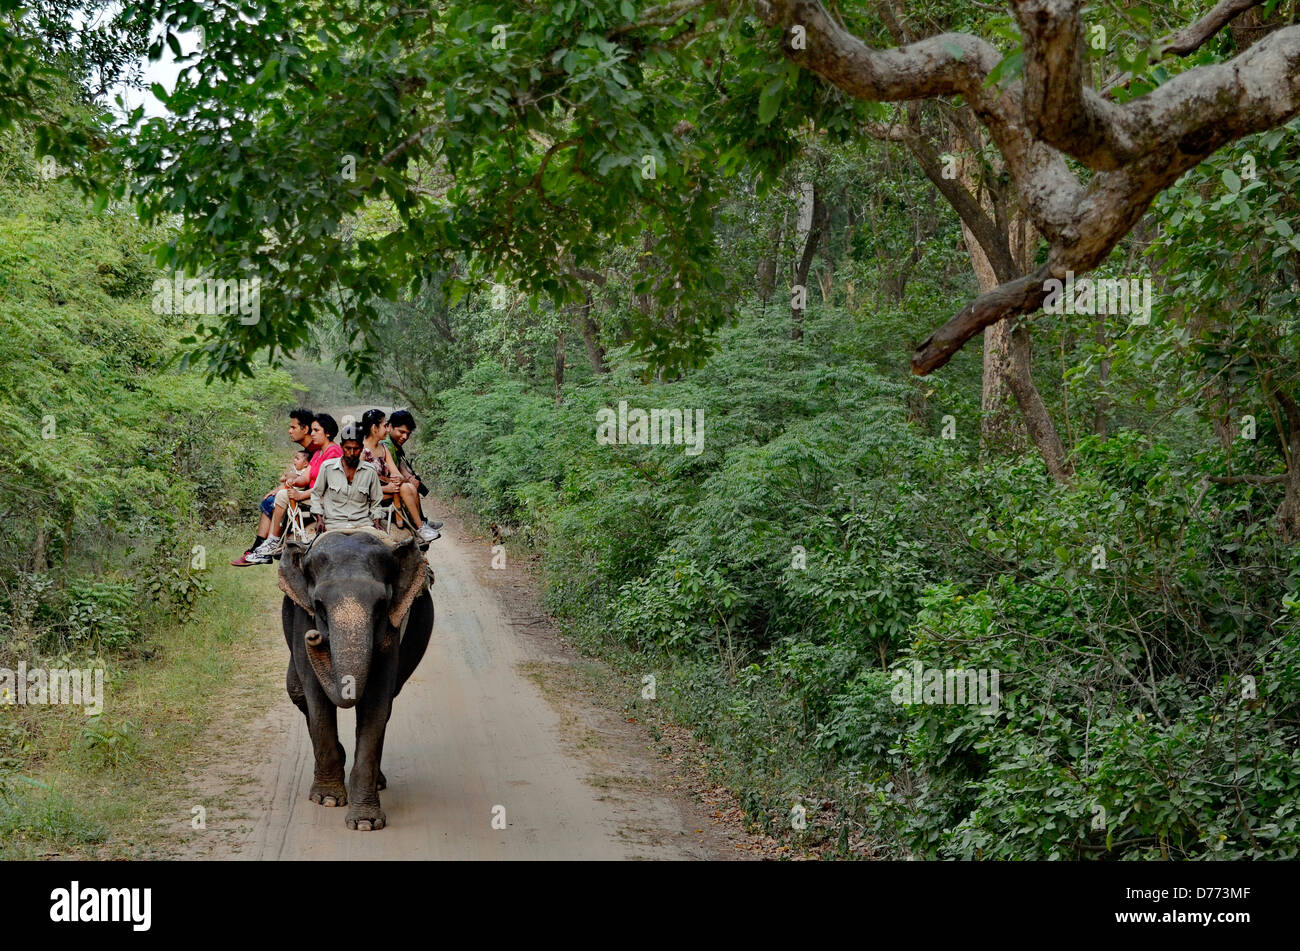 India Uttarakhand state Corbett National Park elephant ride in the forest Stock Photo